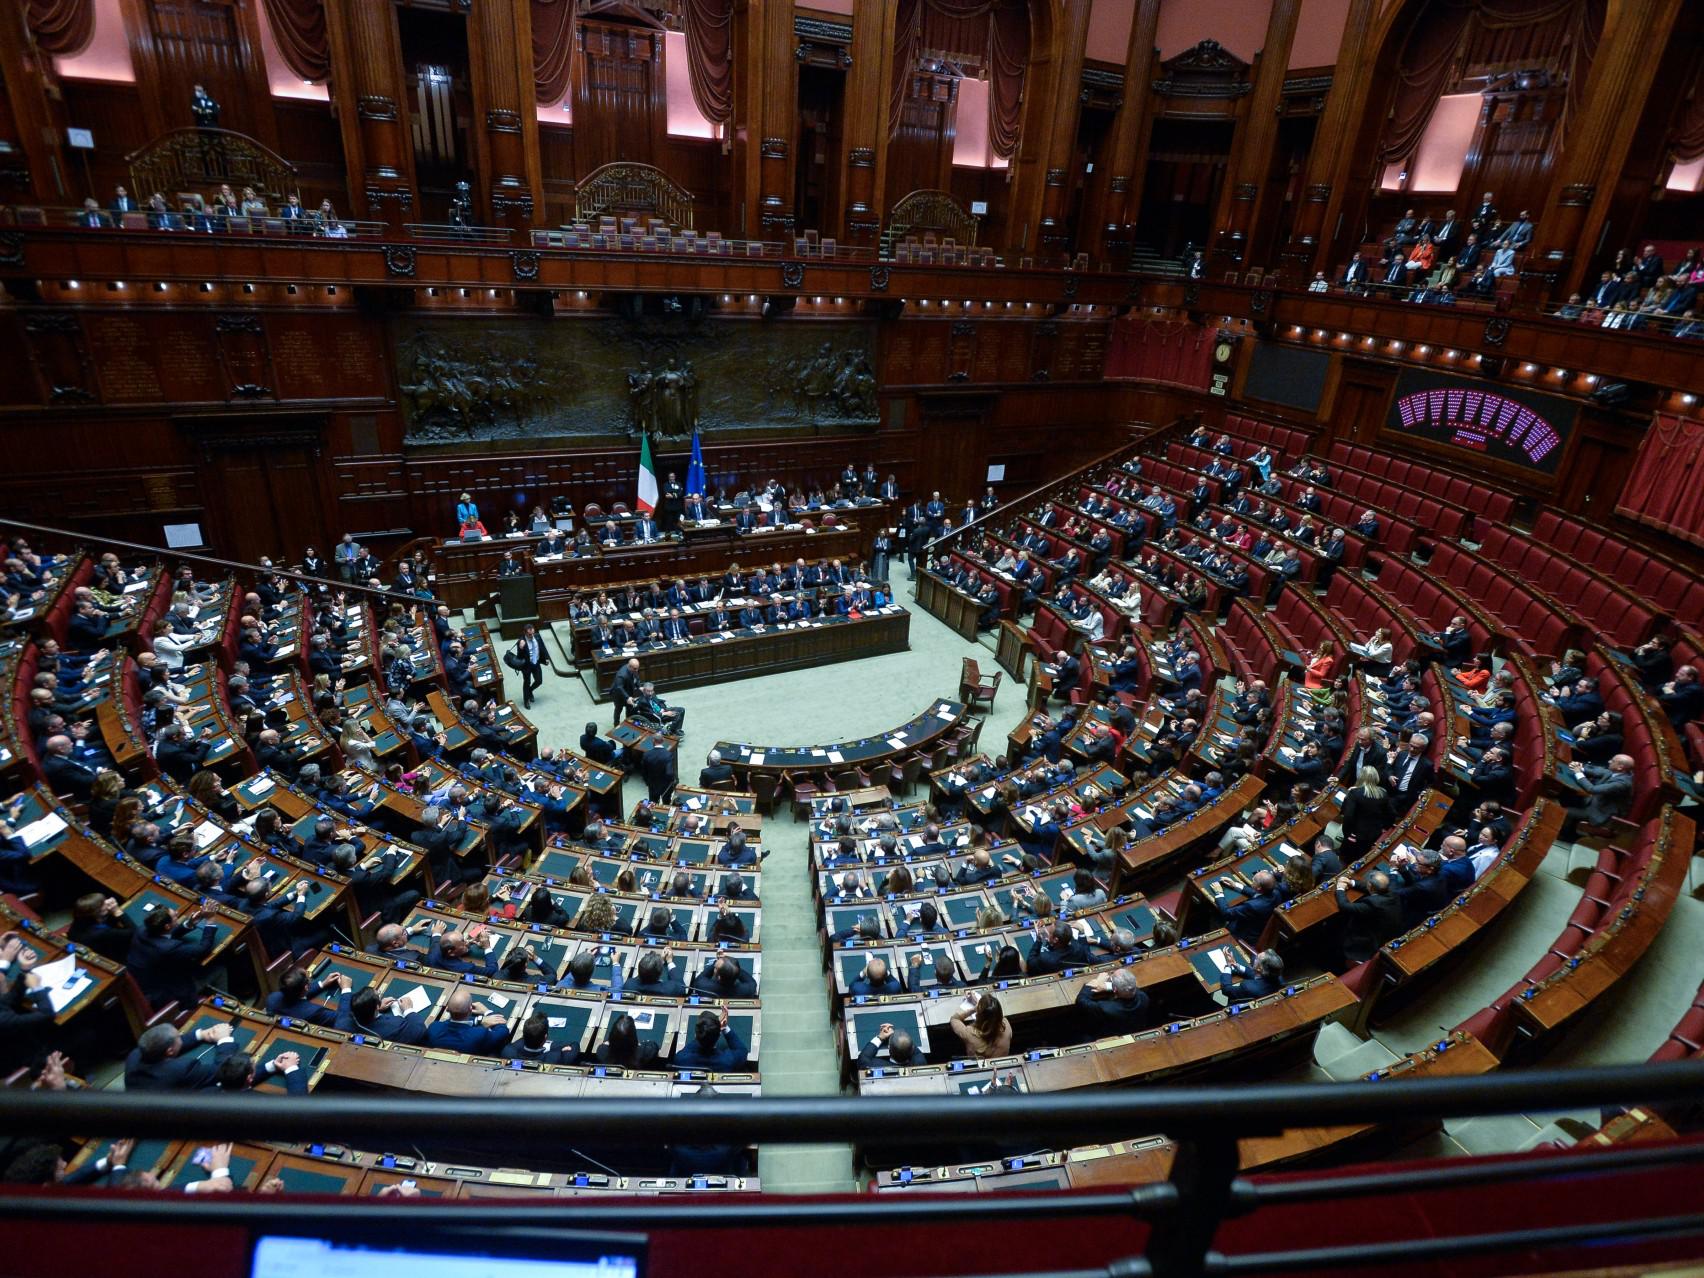 Berlusconi - attacco M5S durante commemorazione: Forza Italia lascia Aula